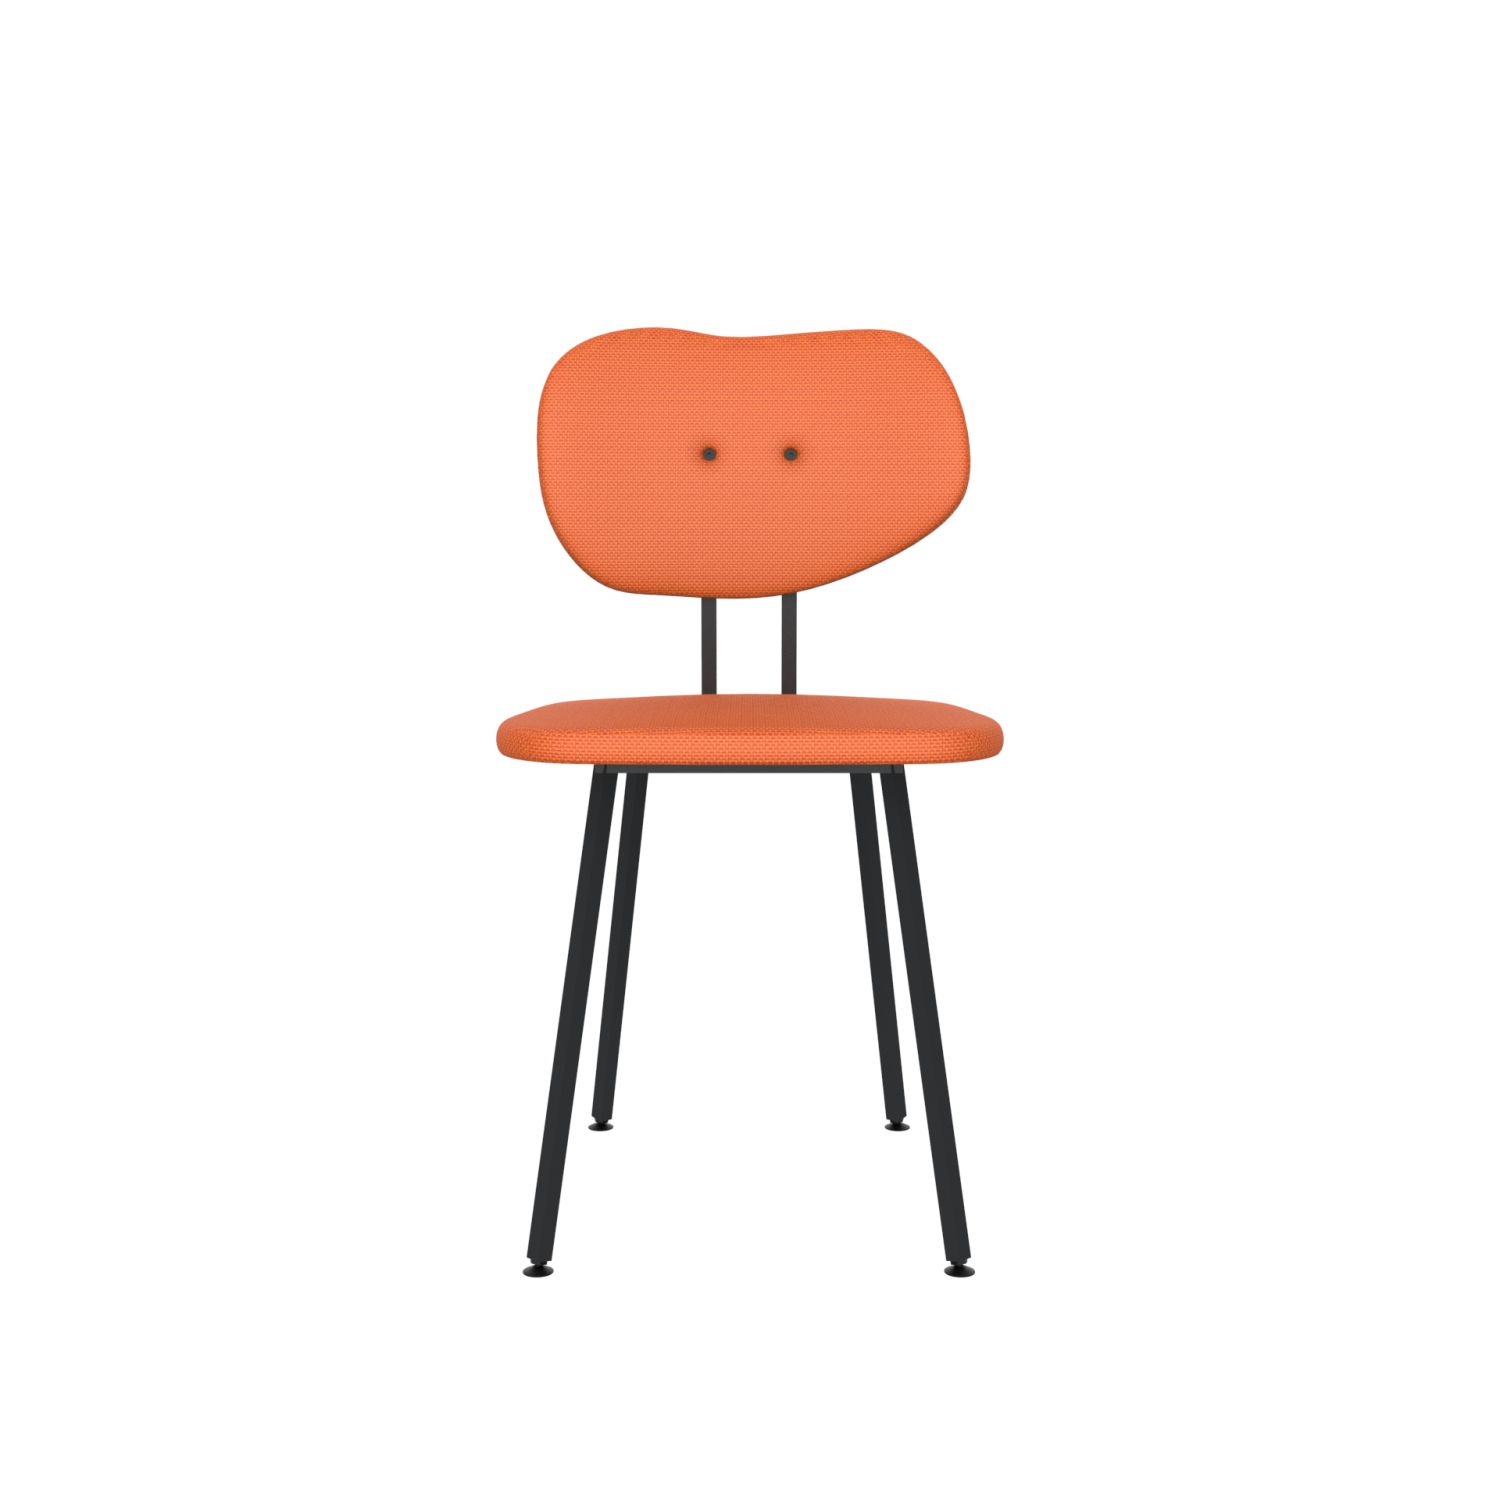 lensvelt maarten baas chair 101 not stackable without armrests backrest b burn orange 102 black ral9005 hard leg ends